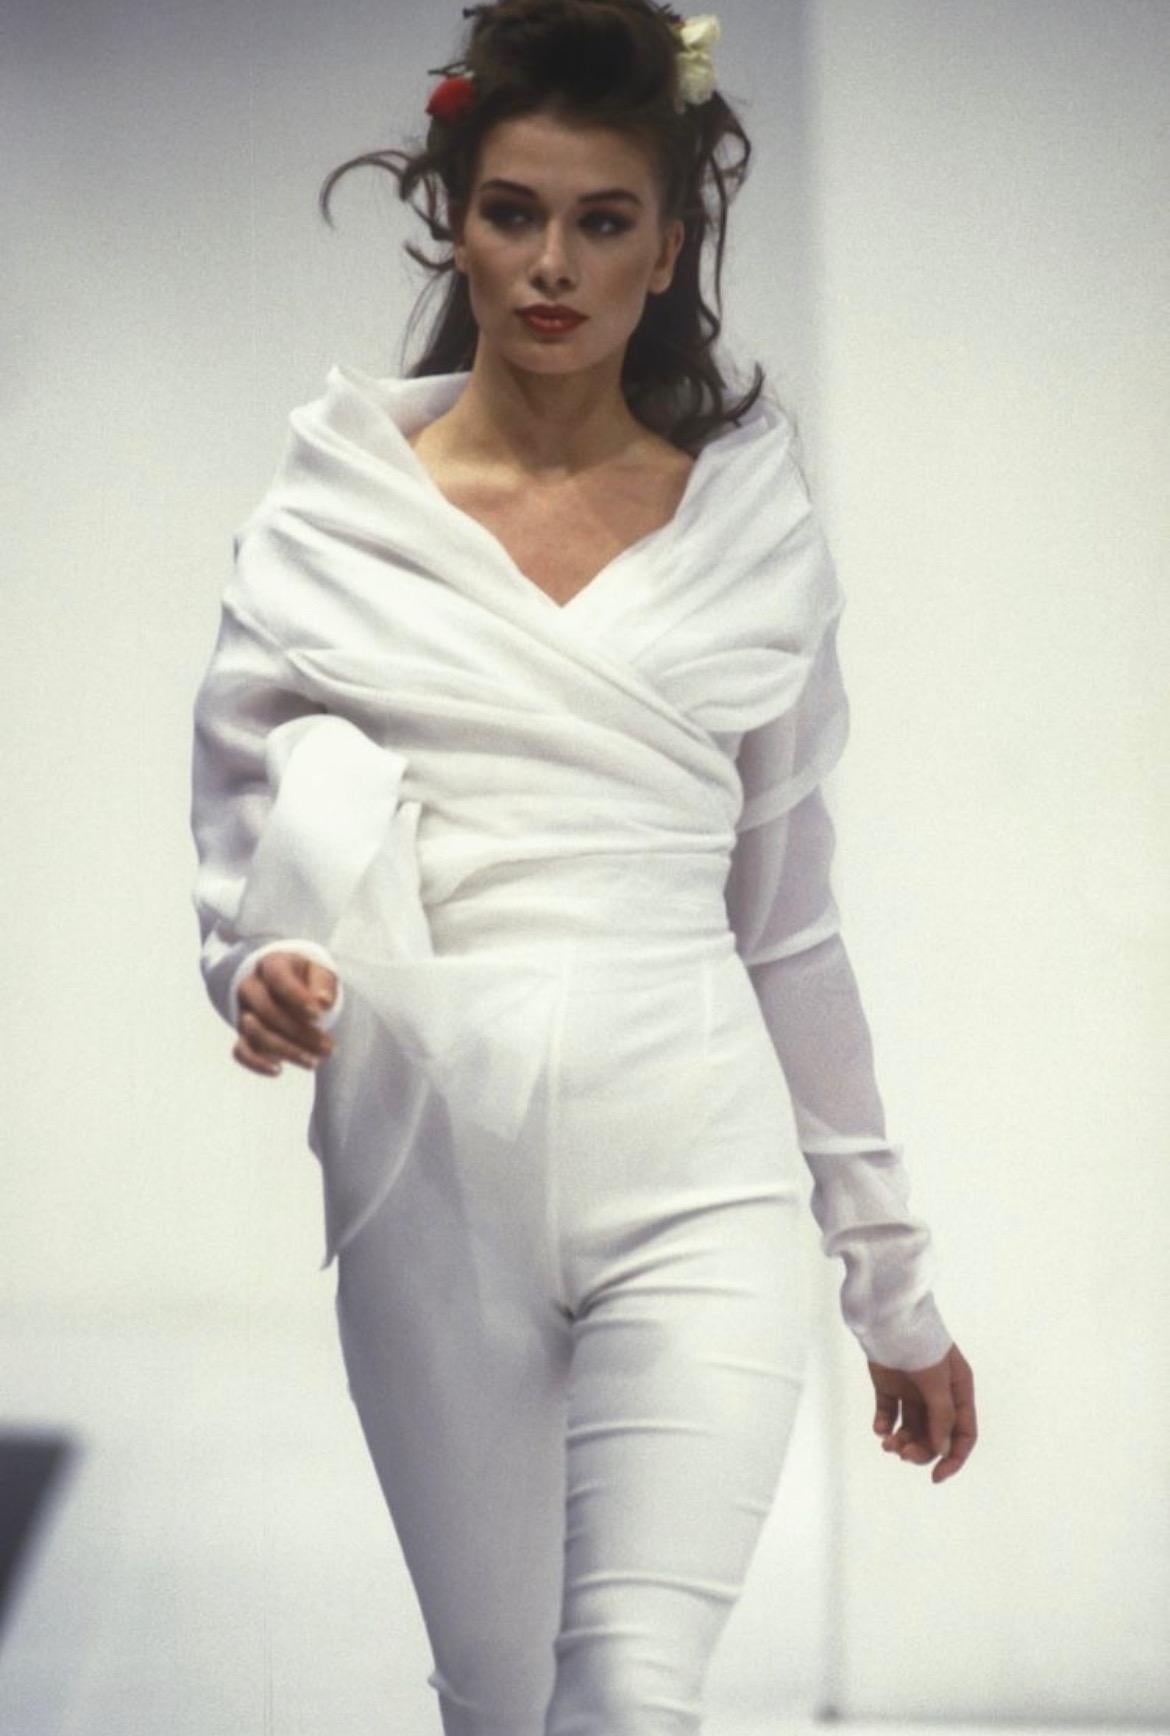 Sie präsentiert eine fabelhafte weiße Seidenbluse von Dolce & Gabbana mit fließendem Muster. Eine Version dieses Oberteils aus der Frühjahr/Sommer-Kollektion 1992 wurde erstmals auf dem Laufsteg der Saison gezeigt. Dieses langärmelige Oberteil aus